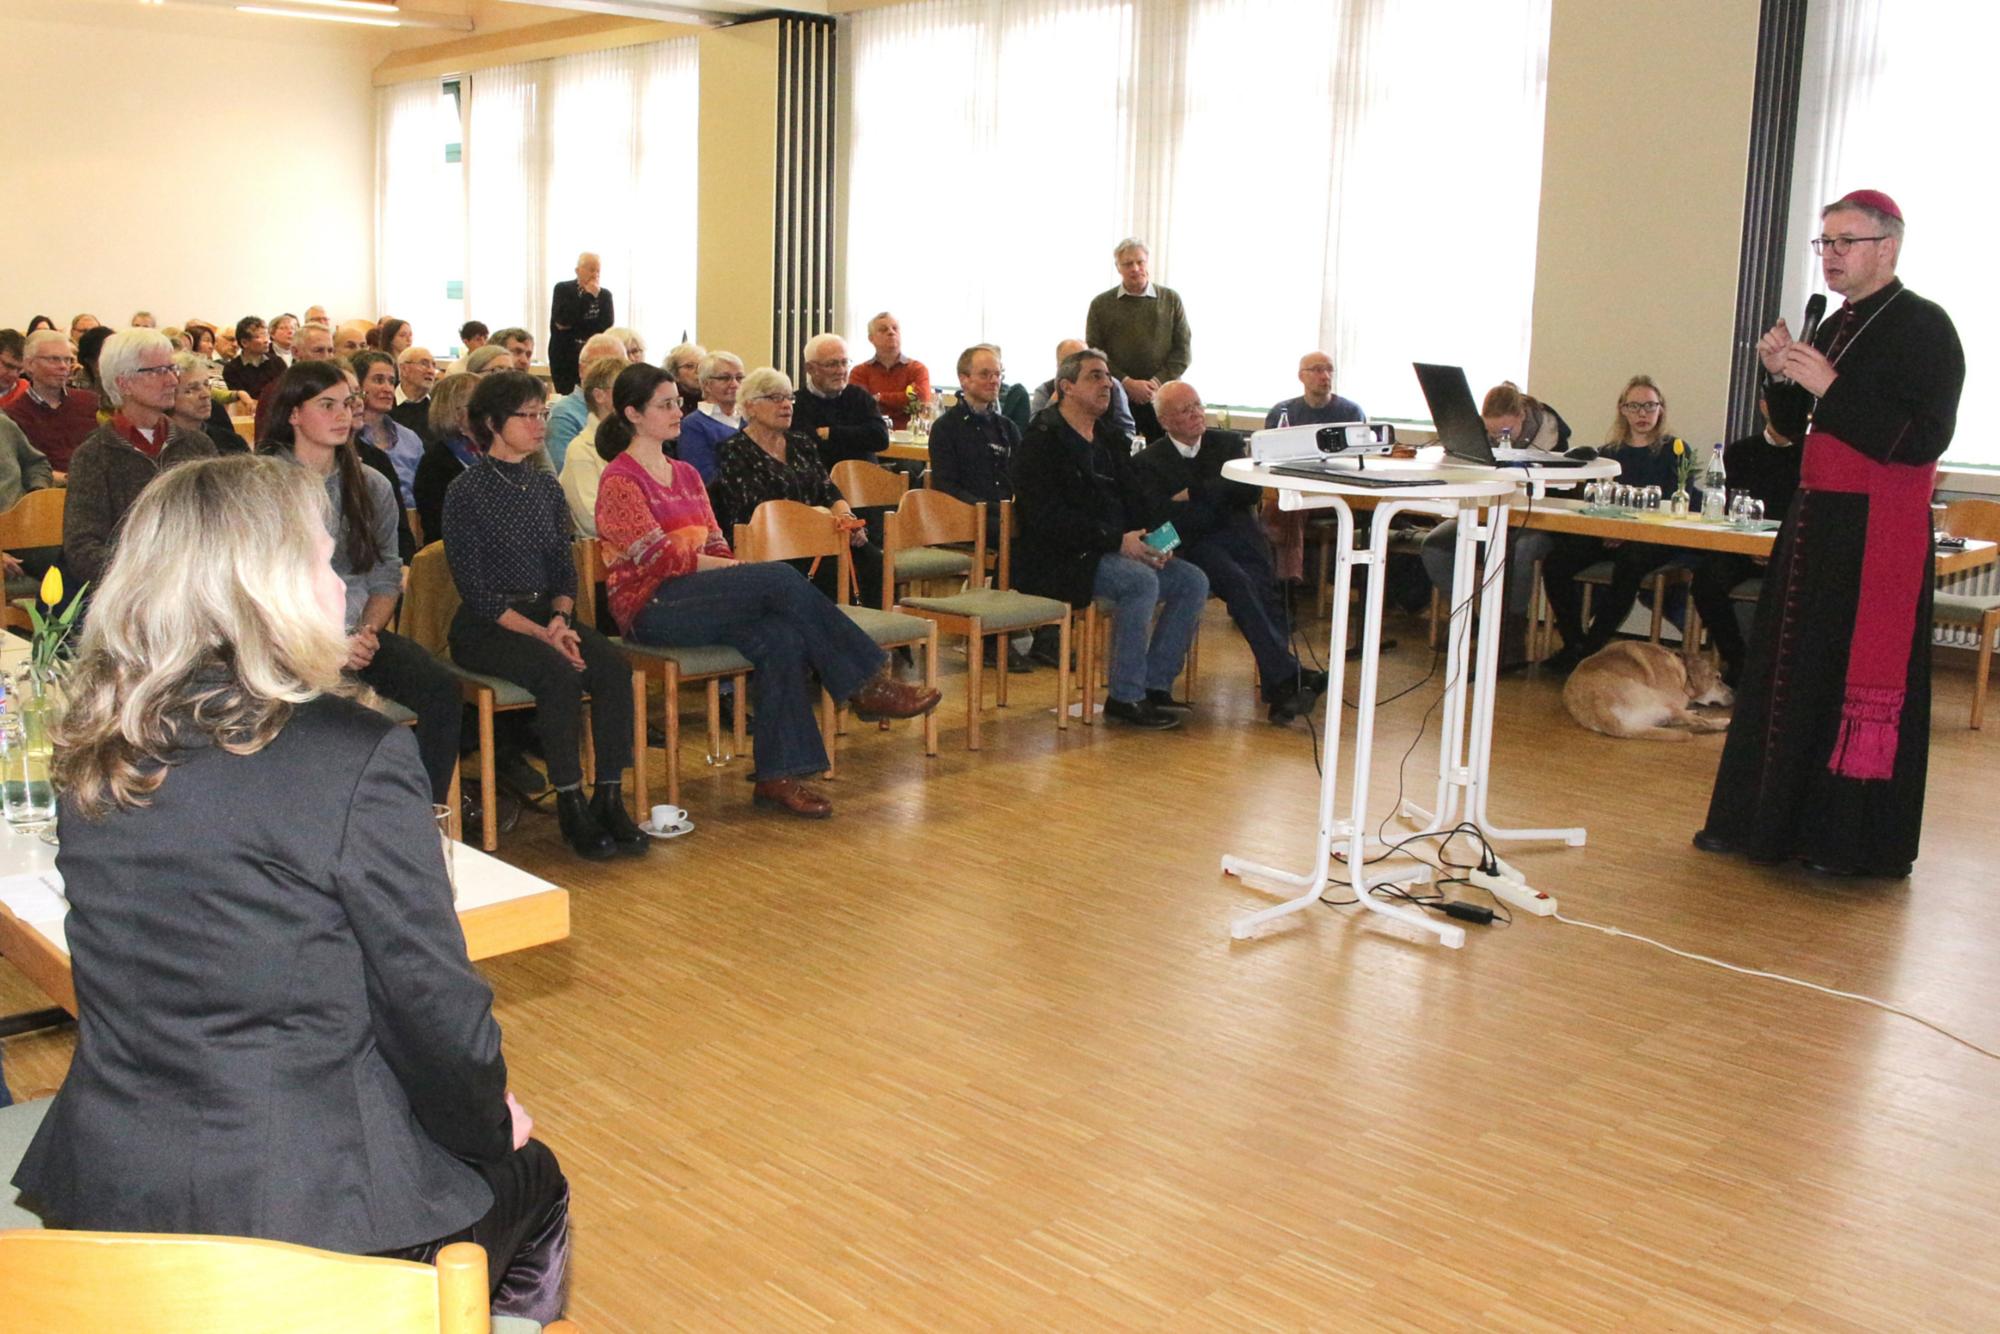 Heidesheim, 12. Januar 2020: Der Gemeindesaal war beim Empfang zum Weltfriedenstag gut gefüllt. (c) Bistum Mainz / Blum